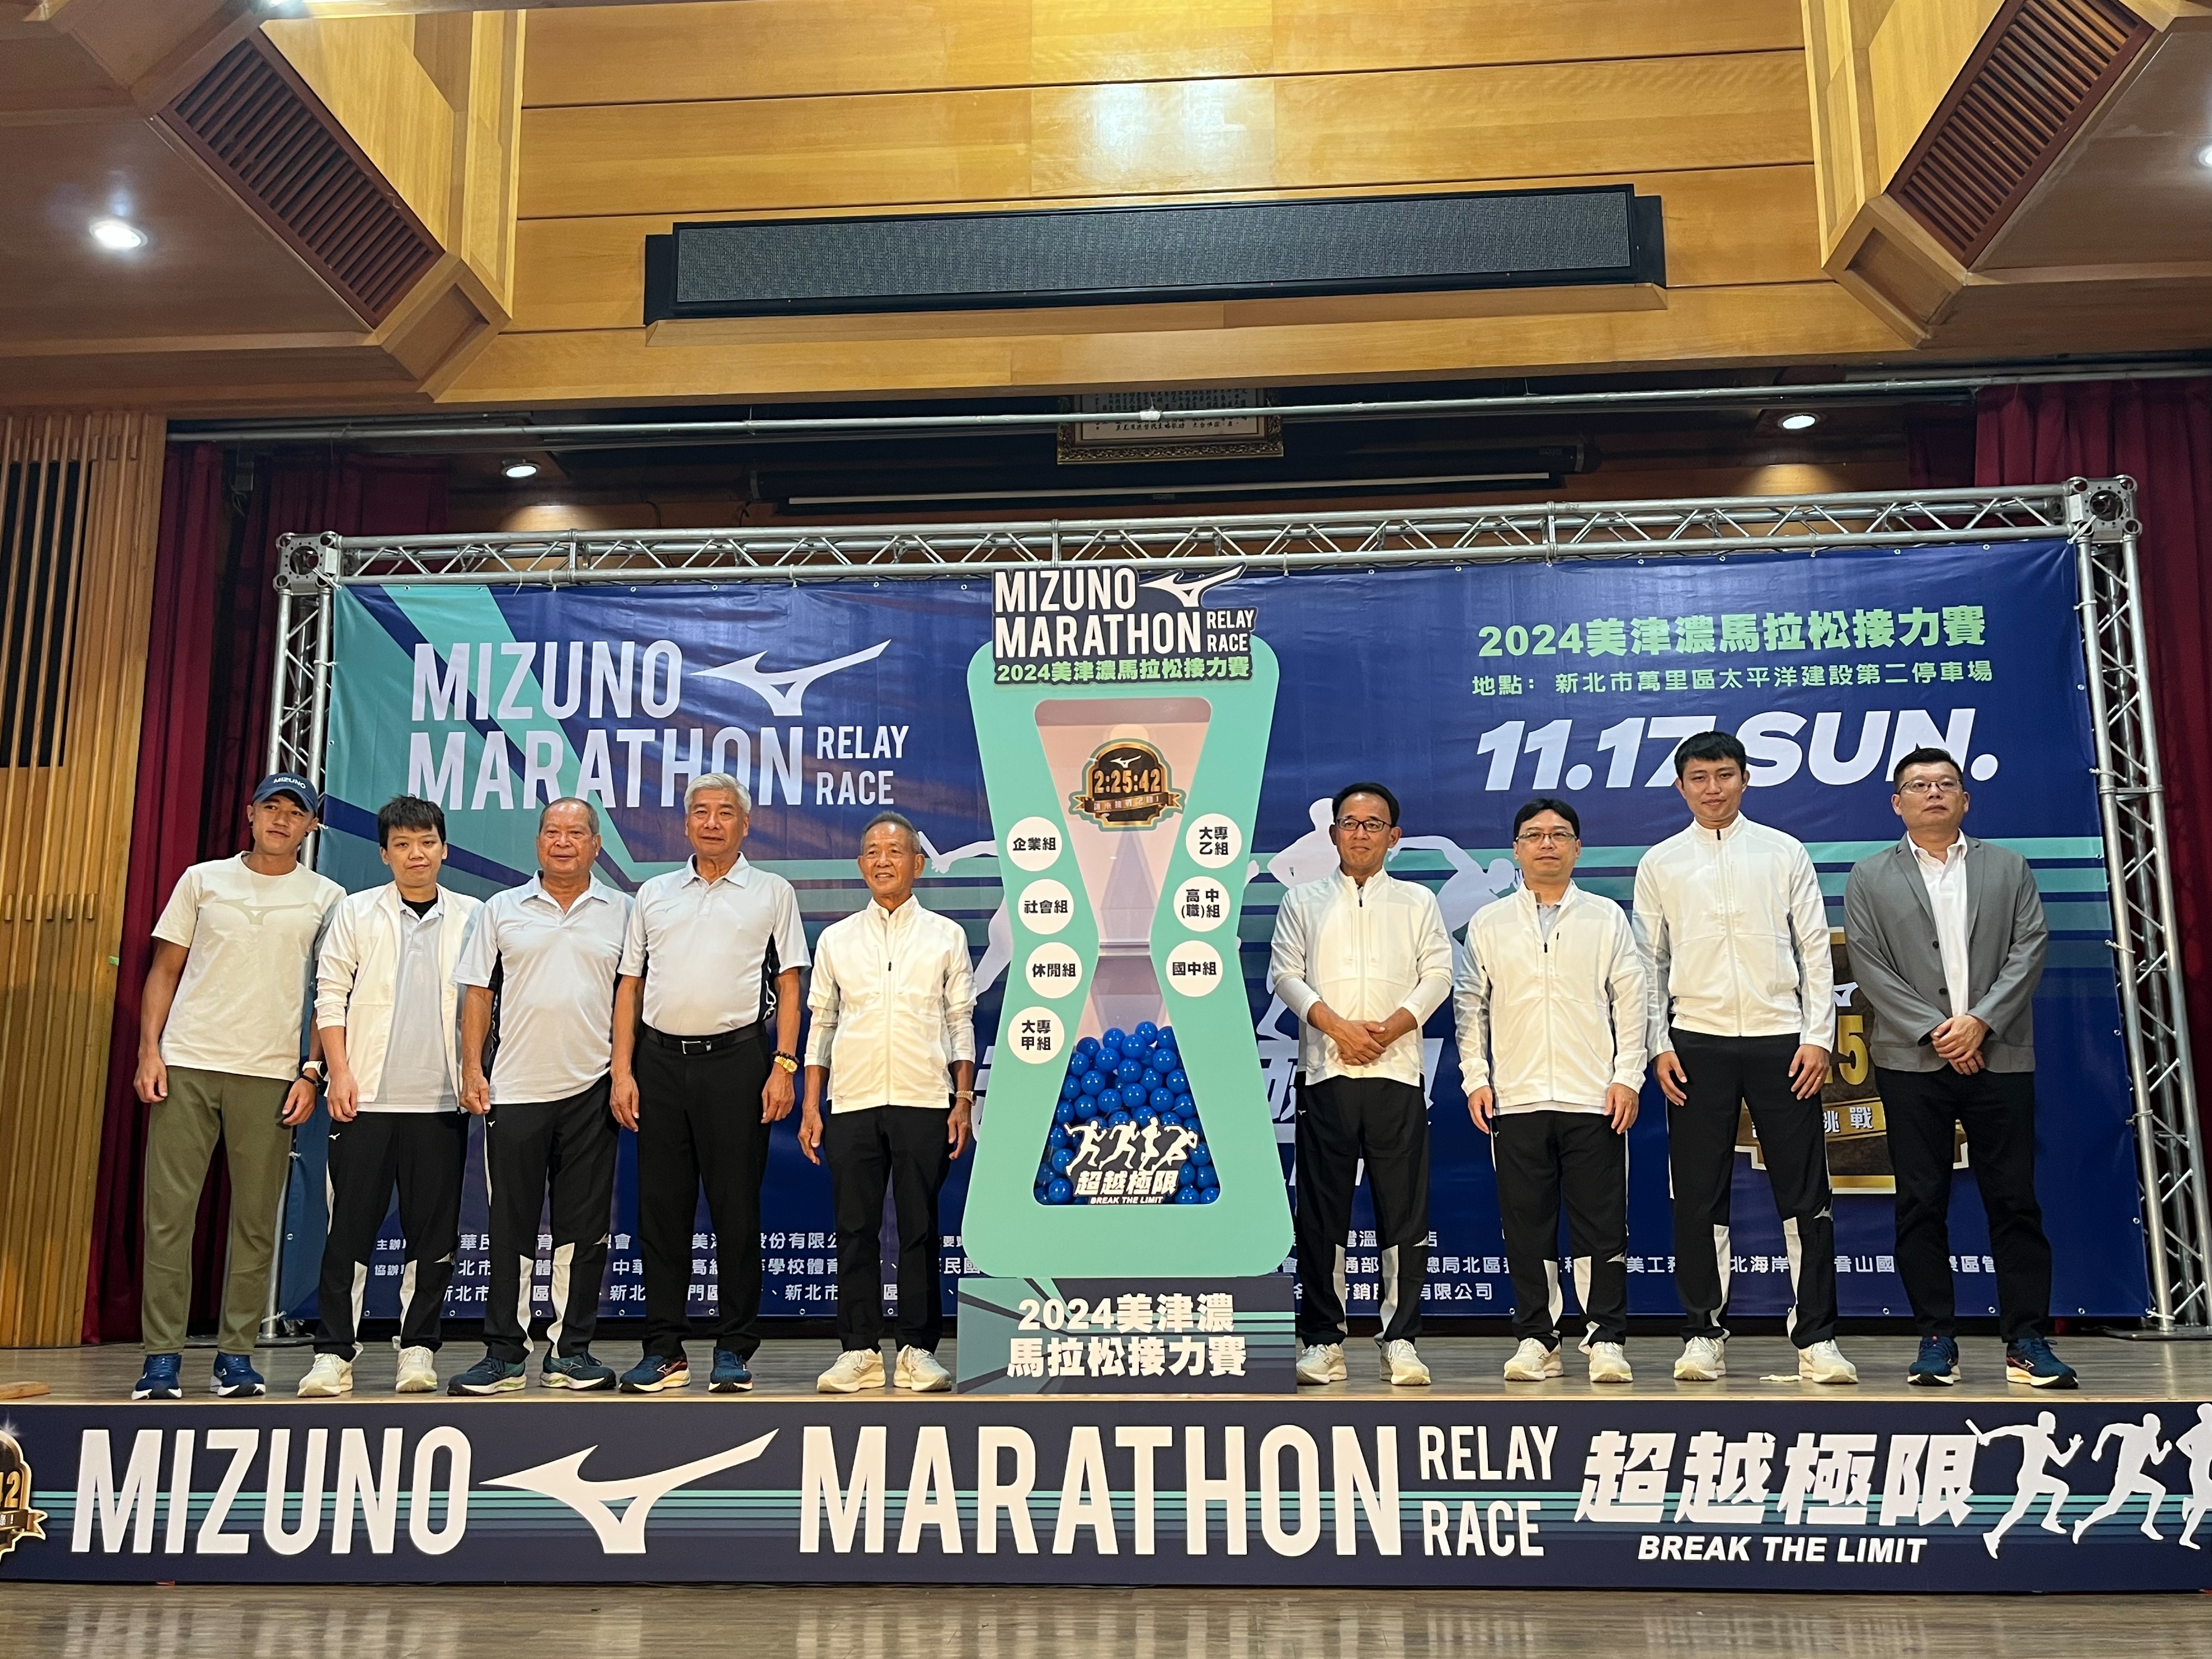 2024 MIZUNO马拉松接力赛将于11月17日举行。记者刘肇育／摄影